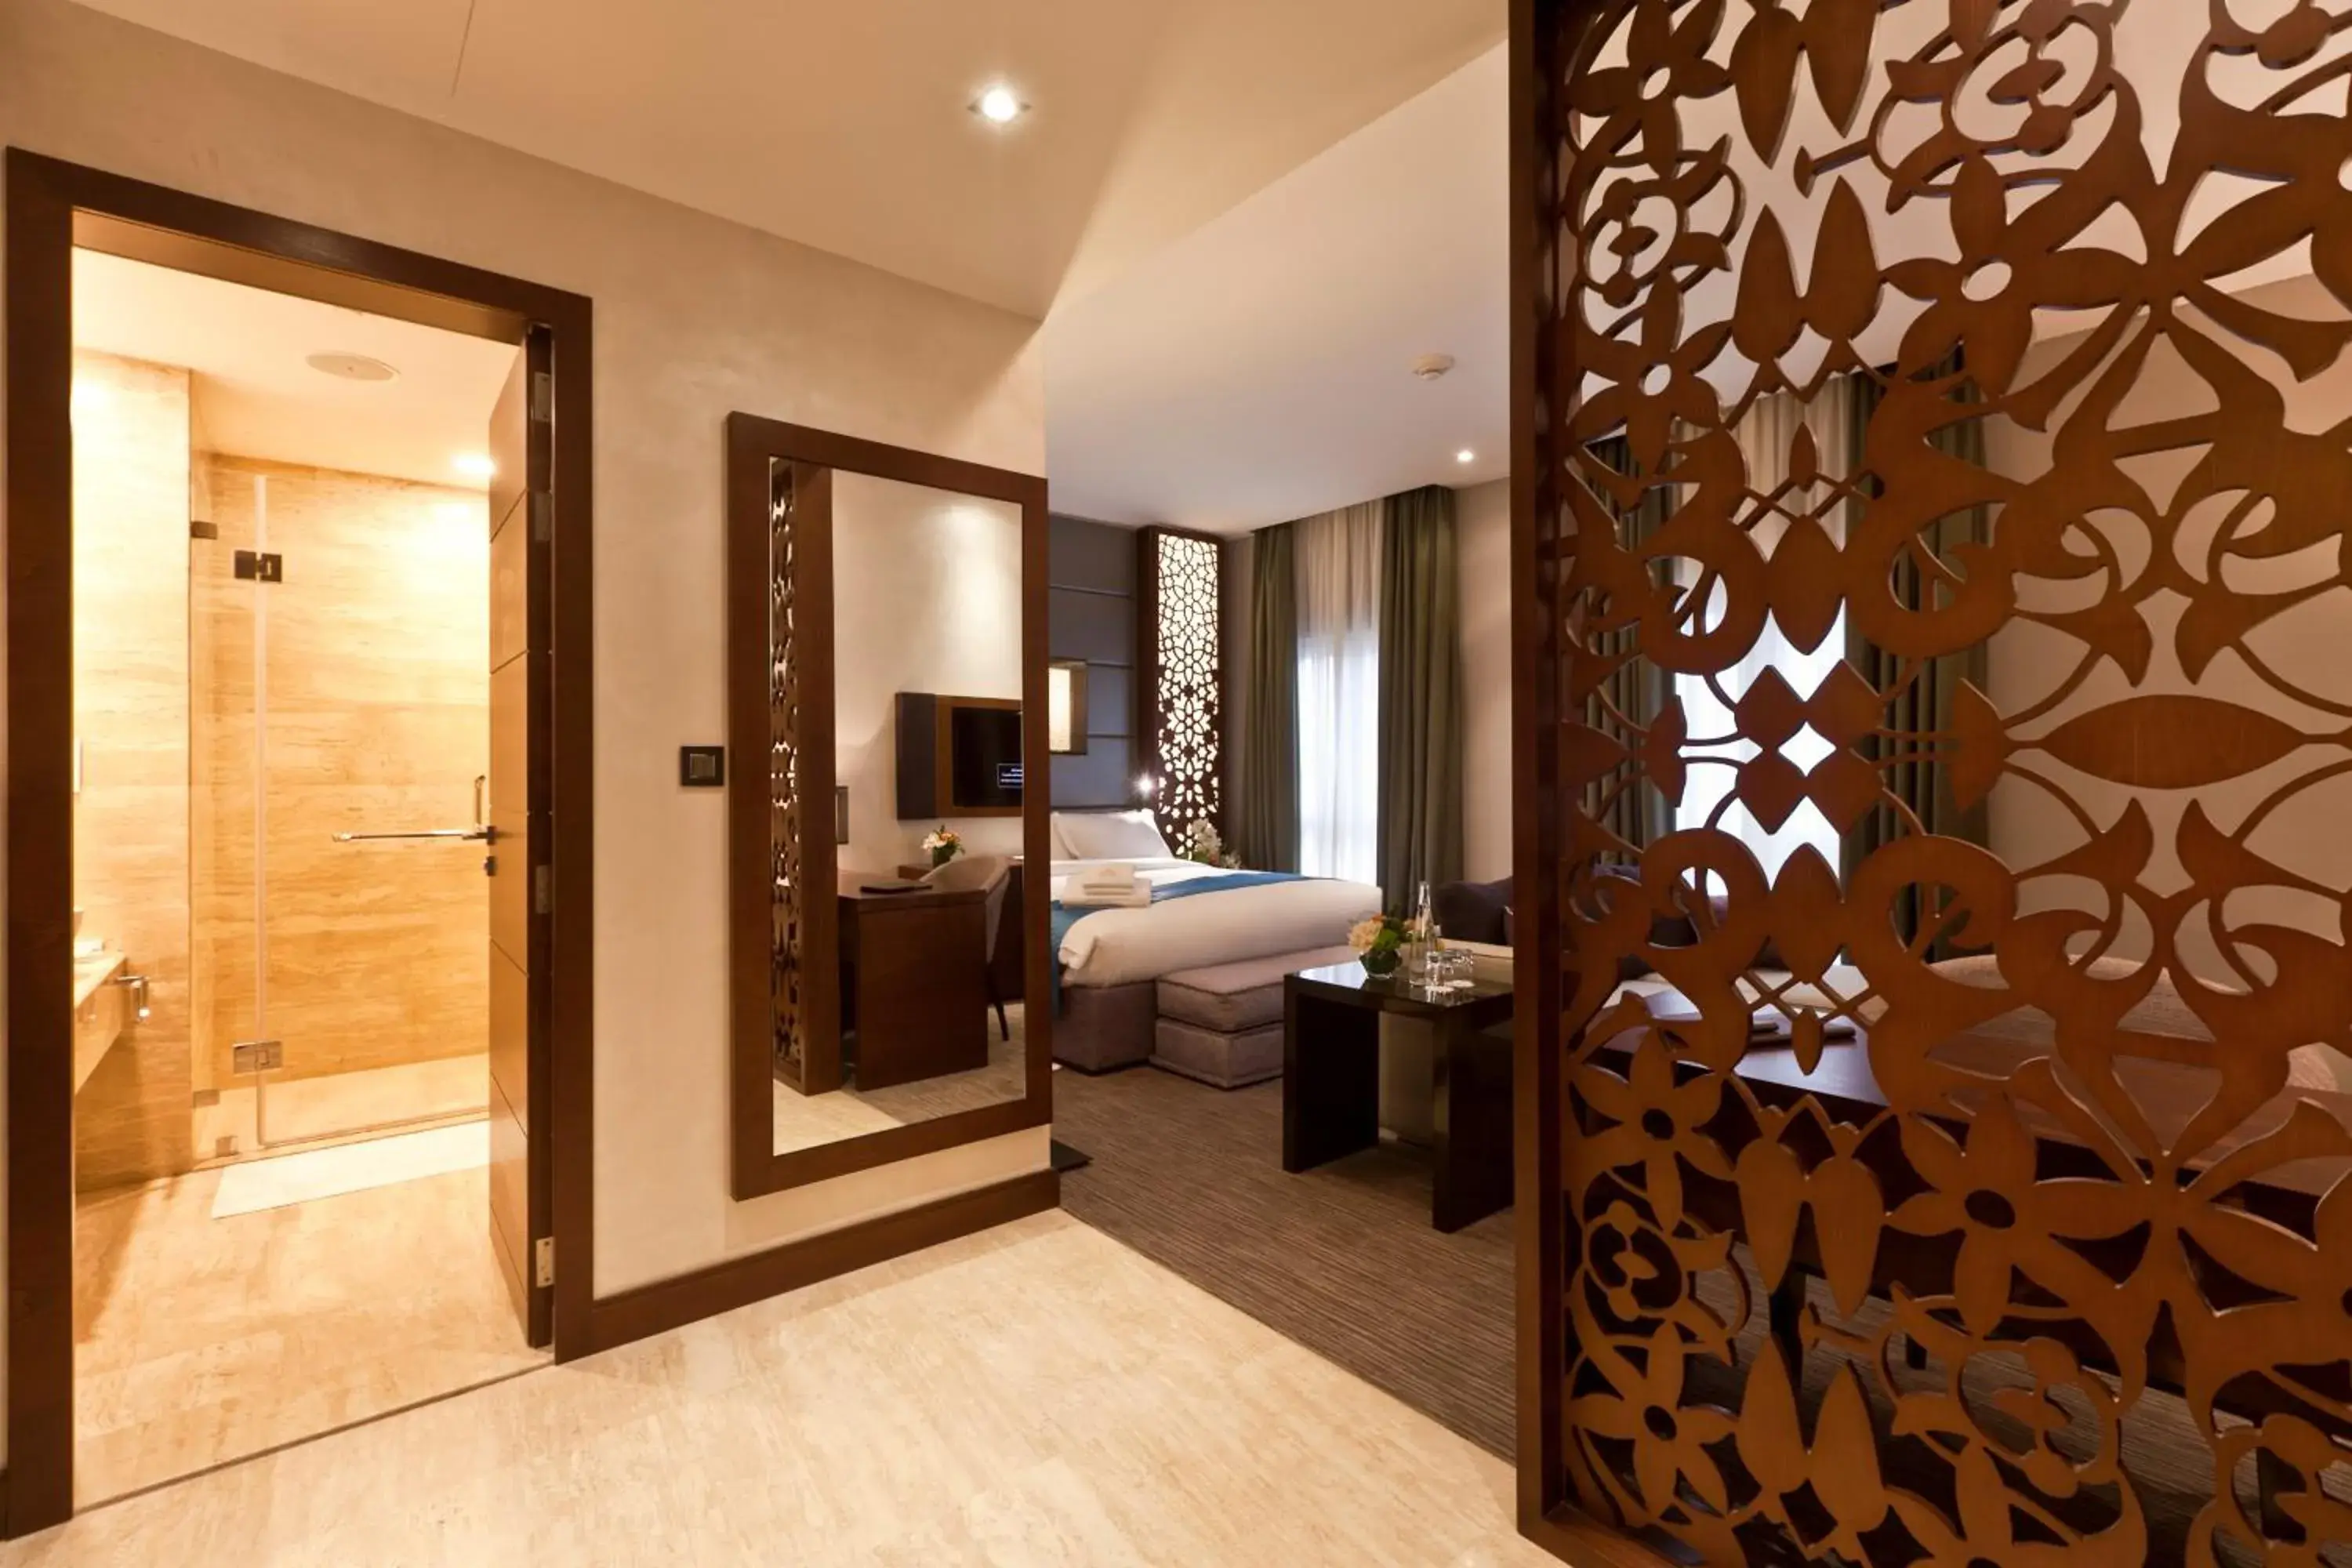 Bedroom, Bathroom in Zubarah Hotel